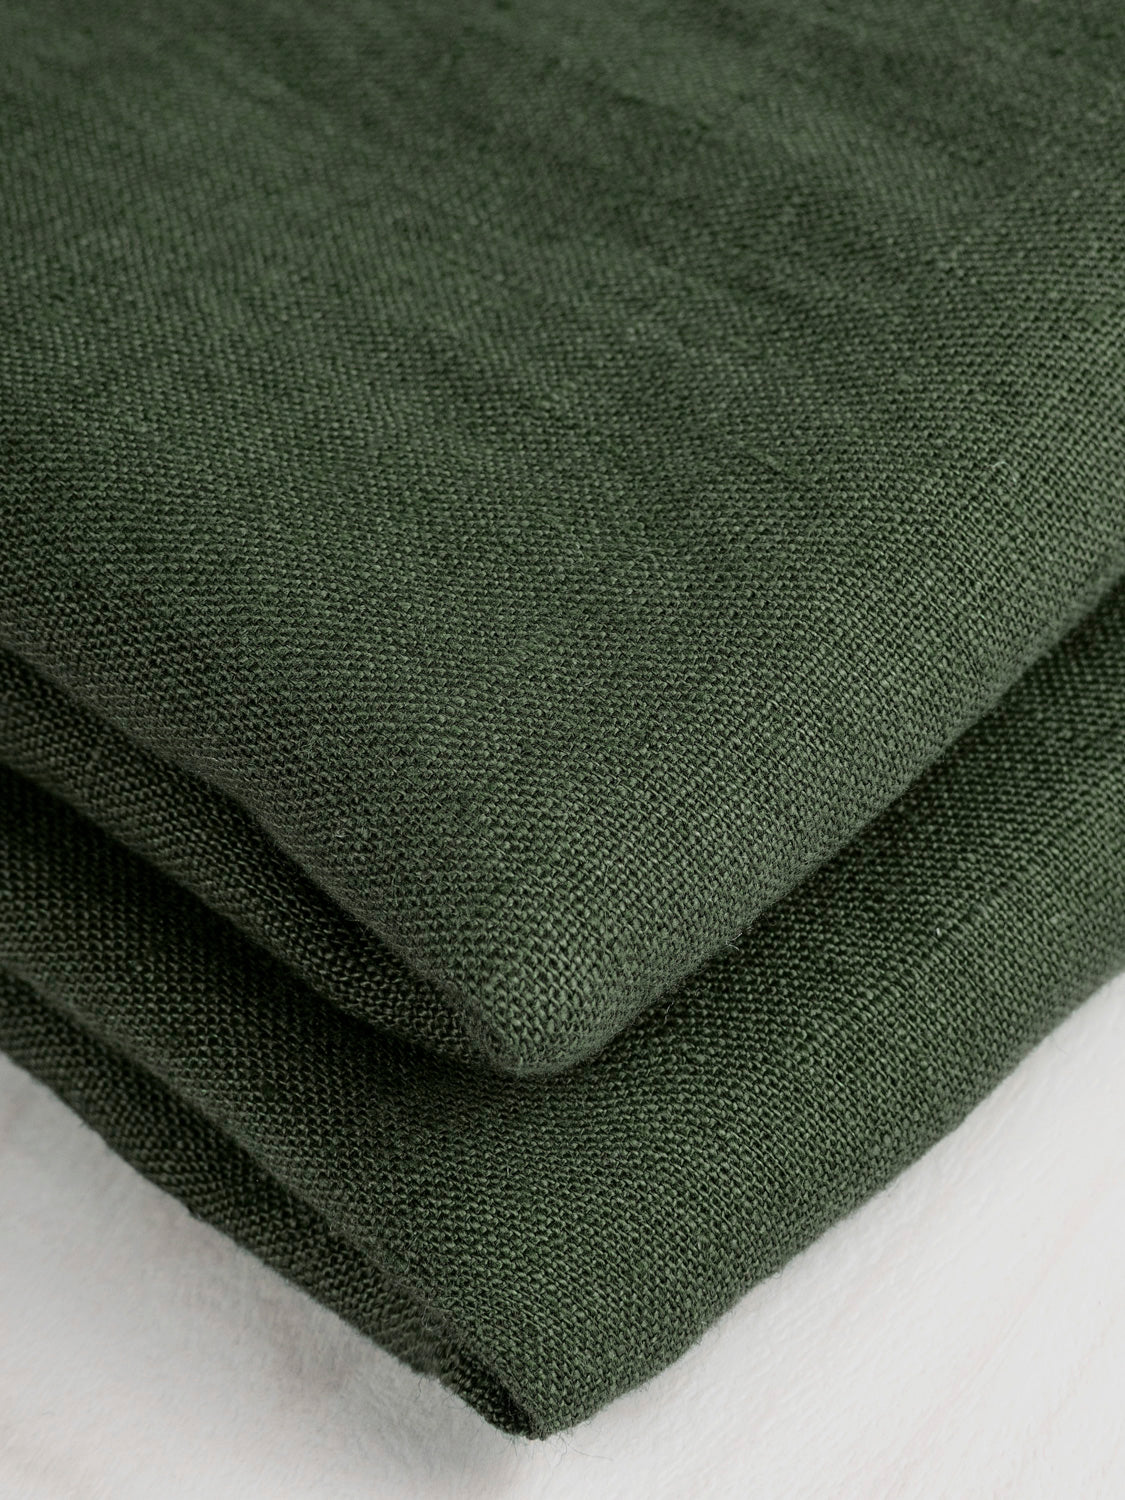 Midweight European Linen - Hunter Green | Core Fabrics